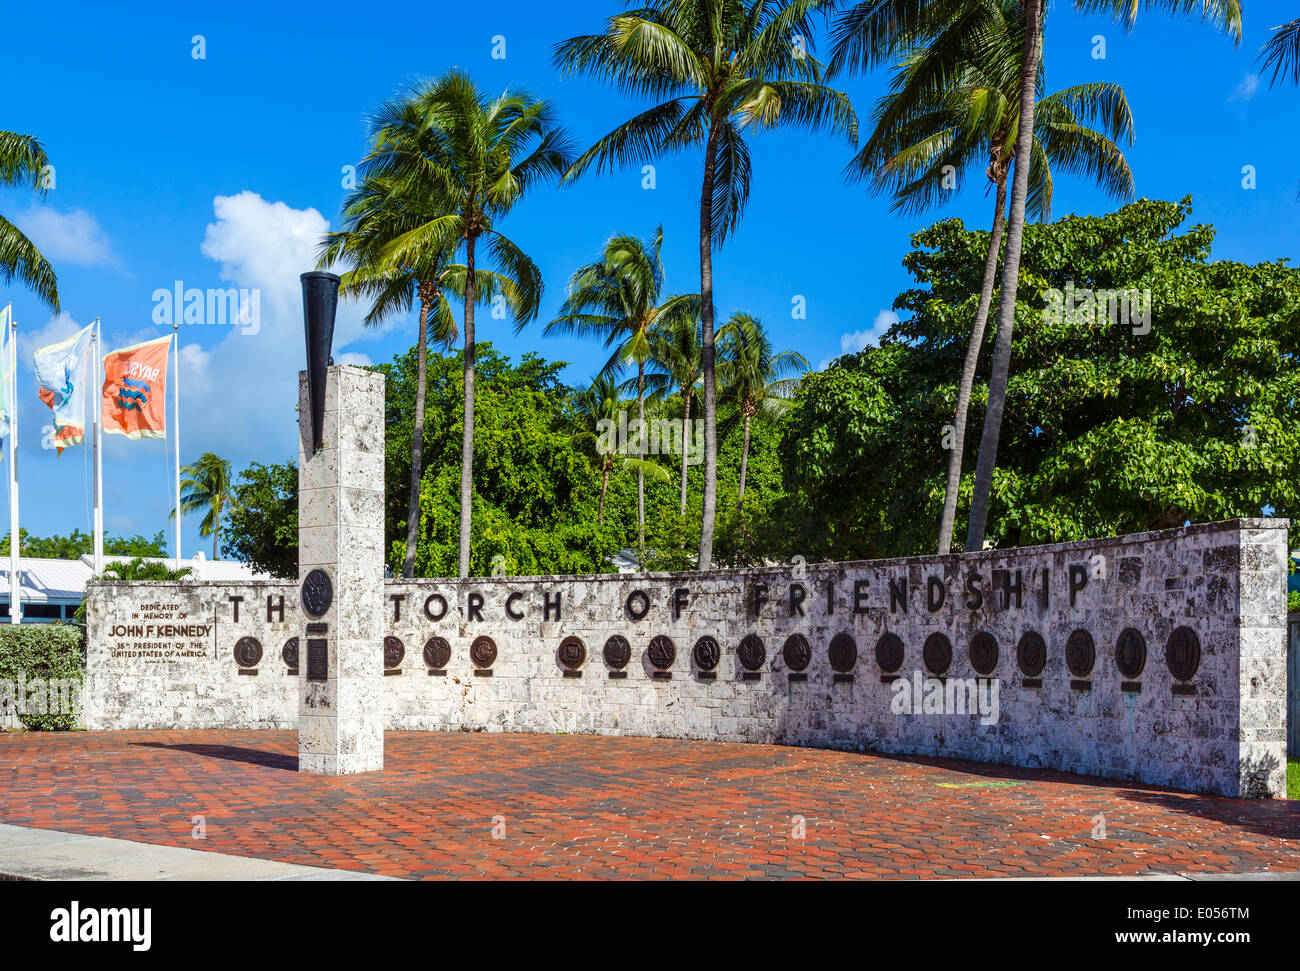 Le John F. Kennedy Memorial Flambeau de l'Amitié, Bayfront Park, Biscayne Boulevard, Miami, Floride, USA Banque D'Images